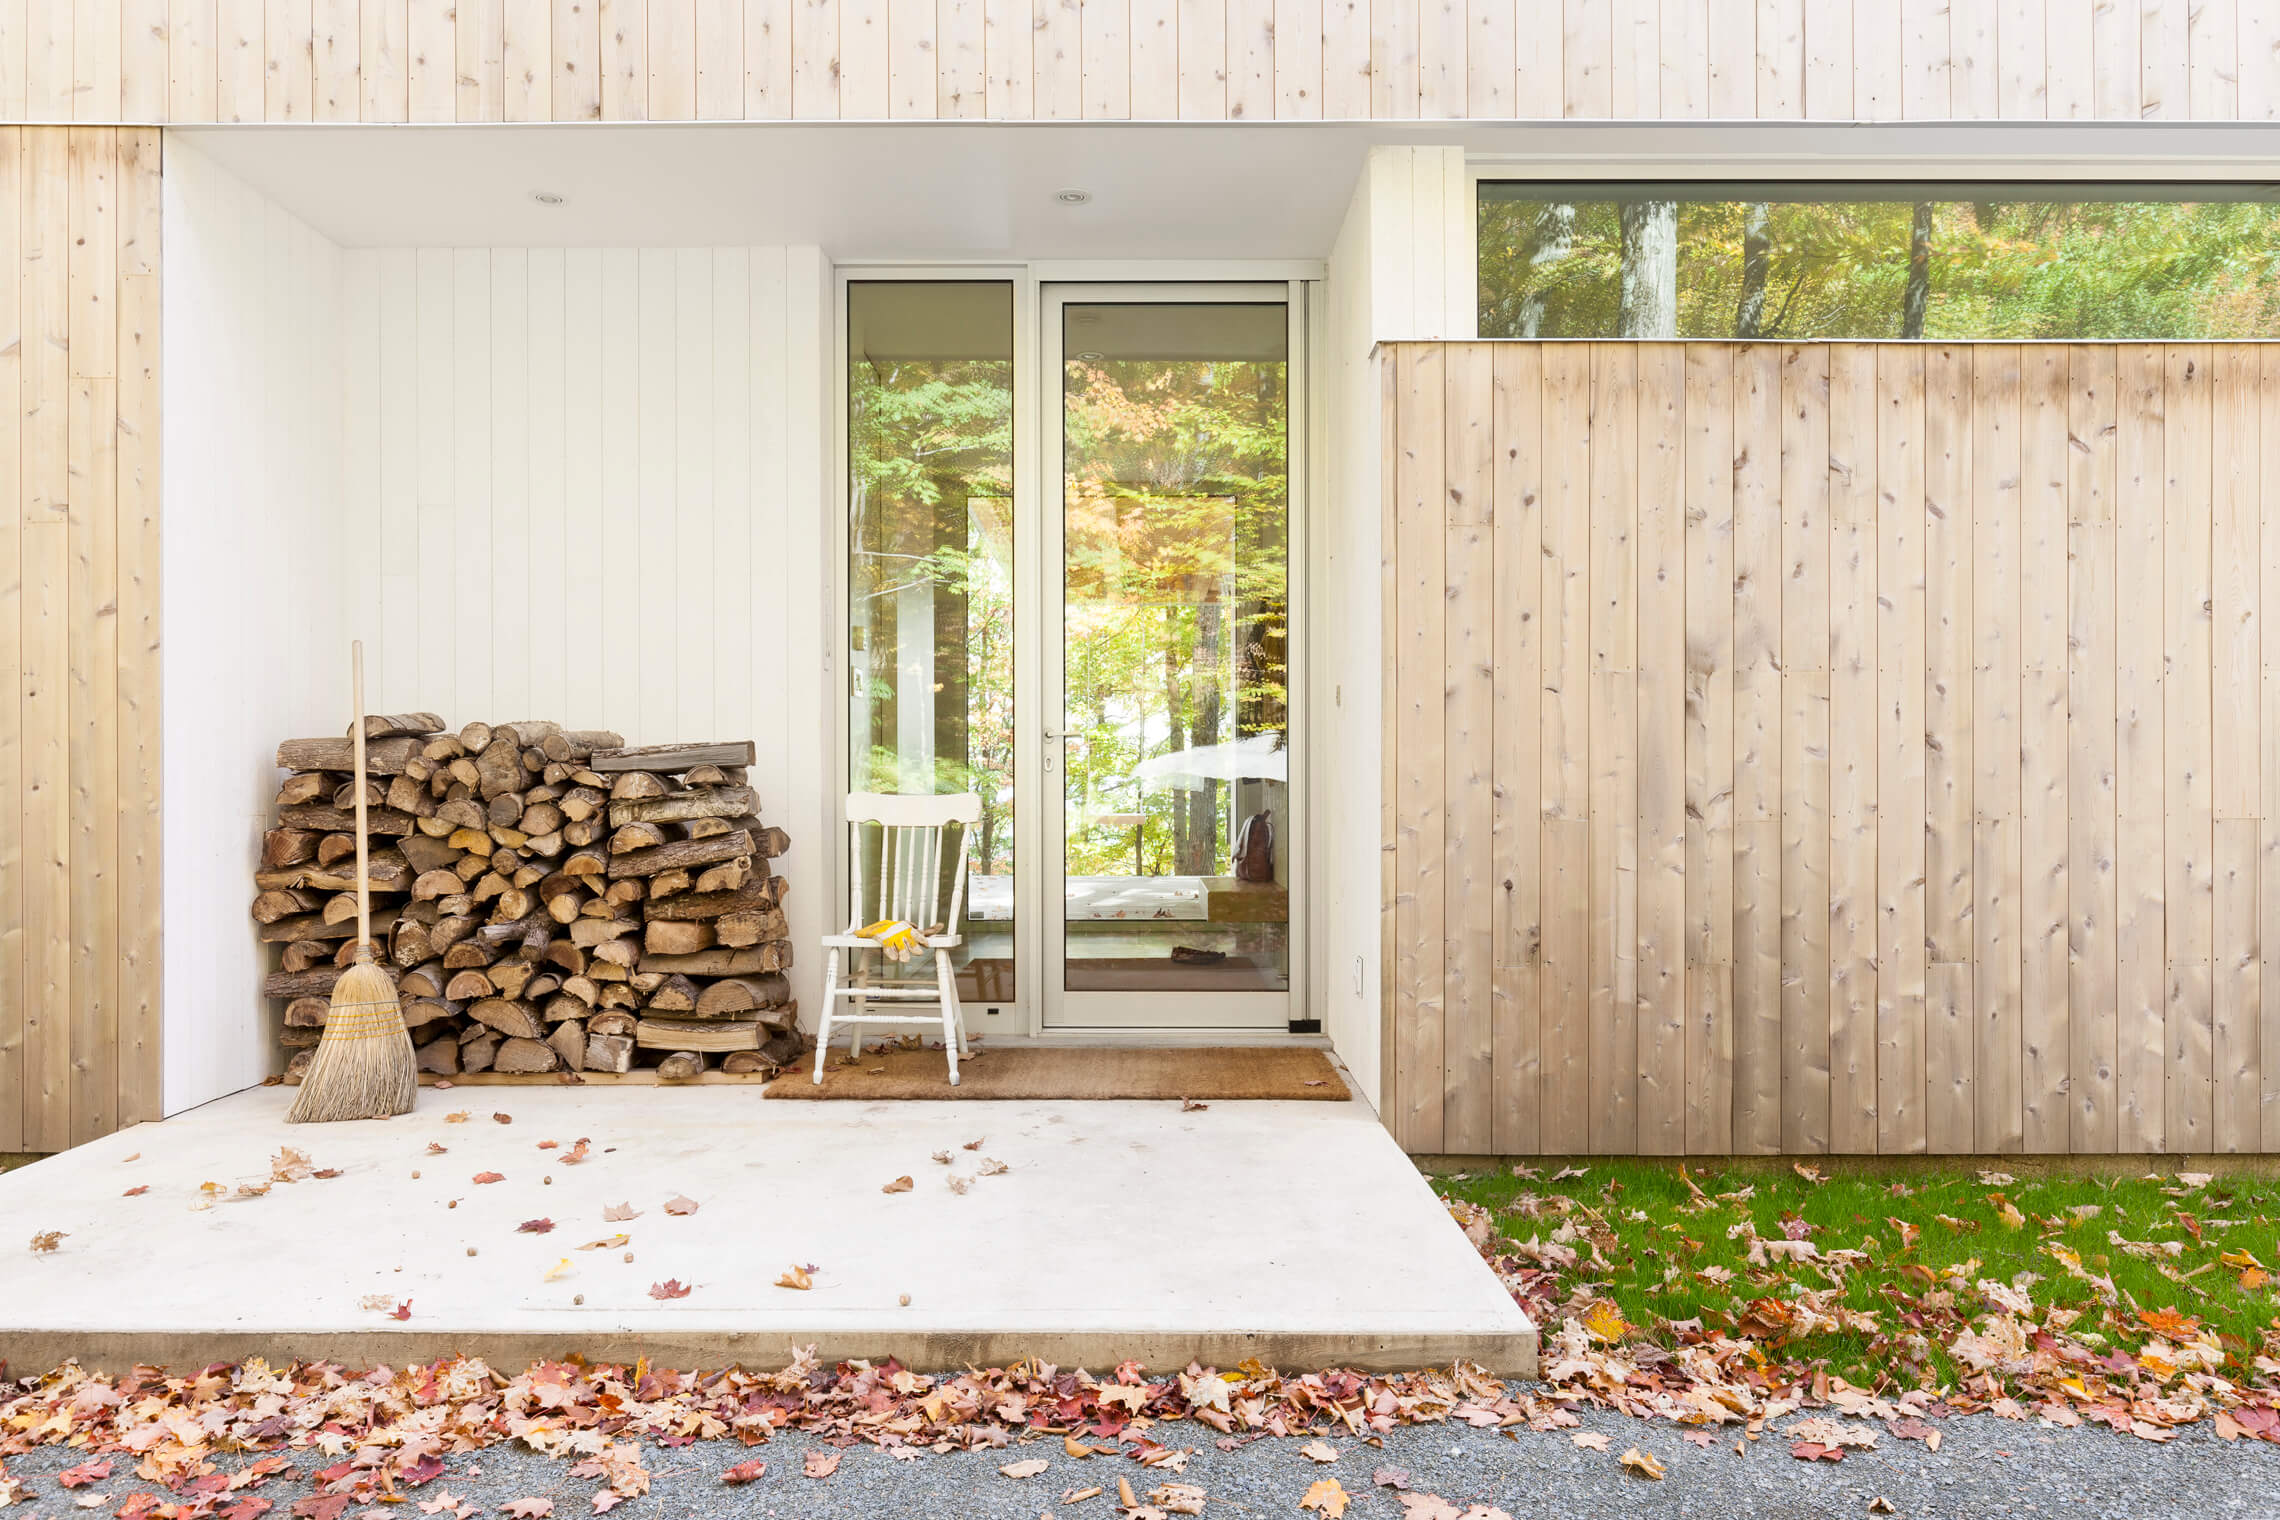 chalet en nature scandinave minimaliste revêtement lattes bois verticales peint blanc et naturel la shed architecture